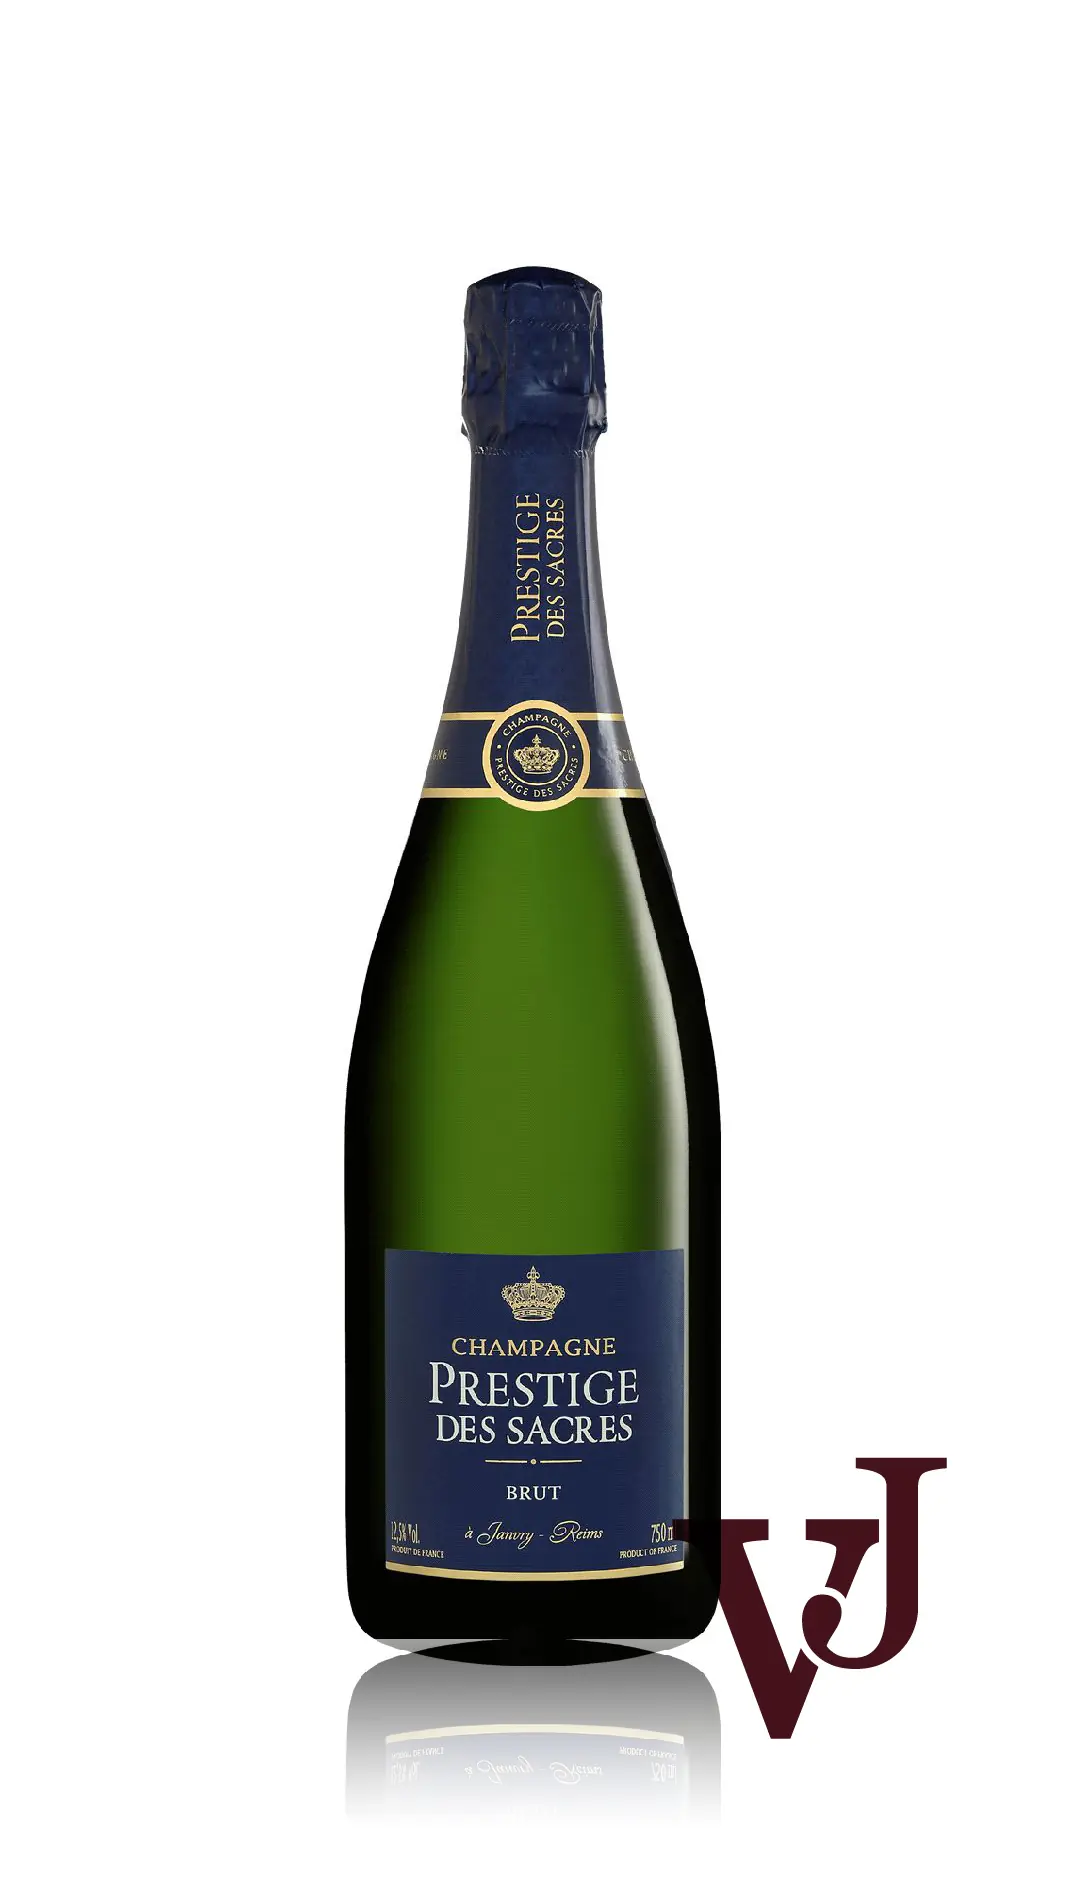 Mousserande Vin - Prestige des Sacres Brut artikel nummer 7780101 från producenten Prestige des Sacres från området Frankrike - Vinjournalen.se